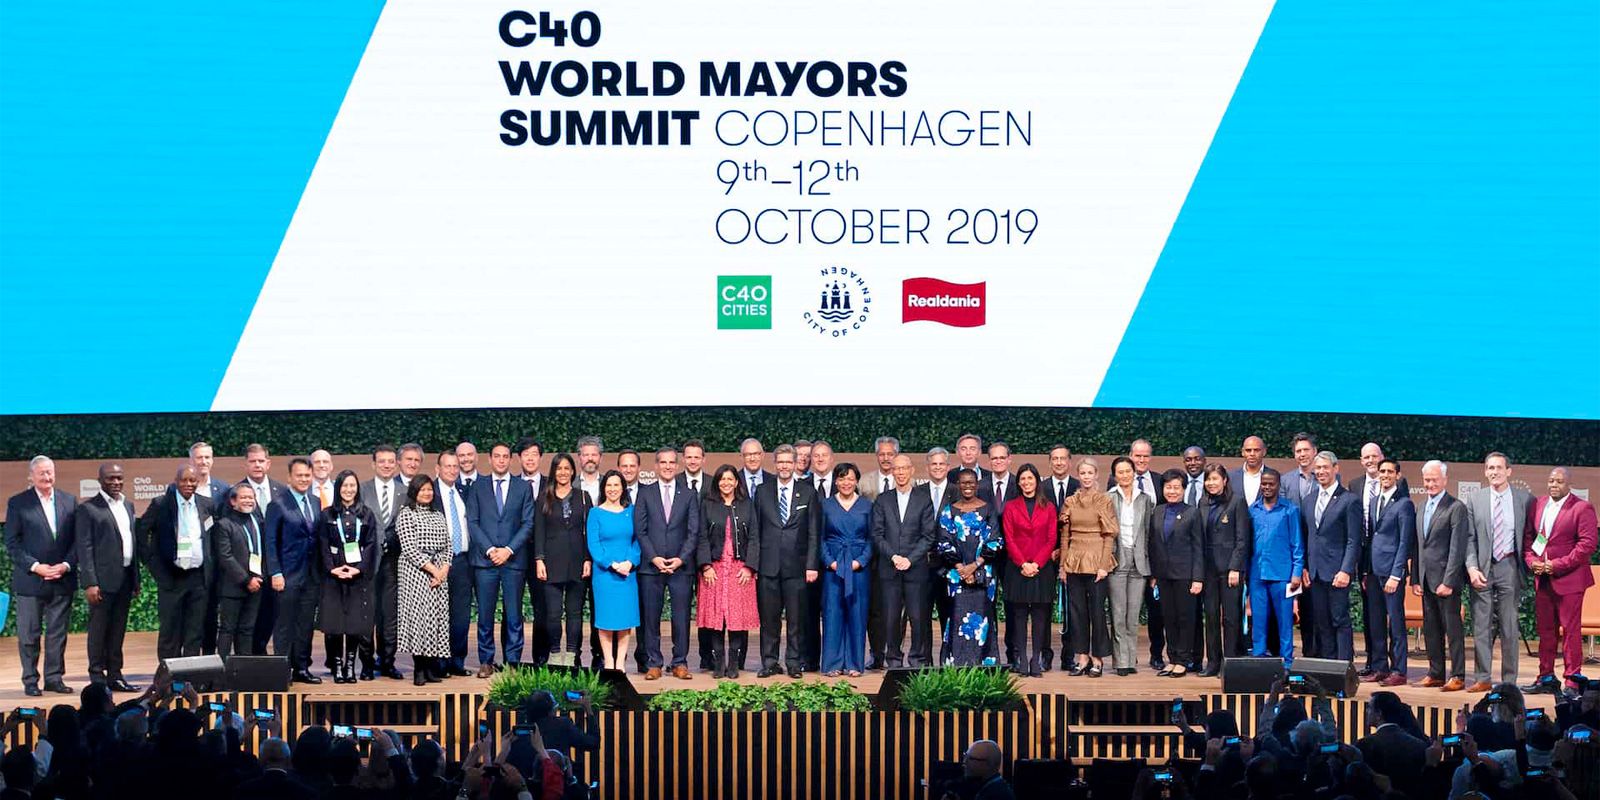 Enlarge photo: Treffen der Bürgermeister auf dem C40 World Mayors Summit in Kopenhagen im Oktober 2019 